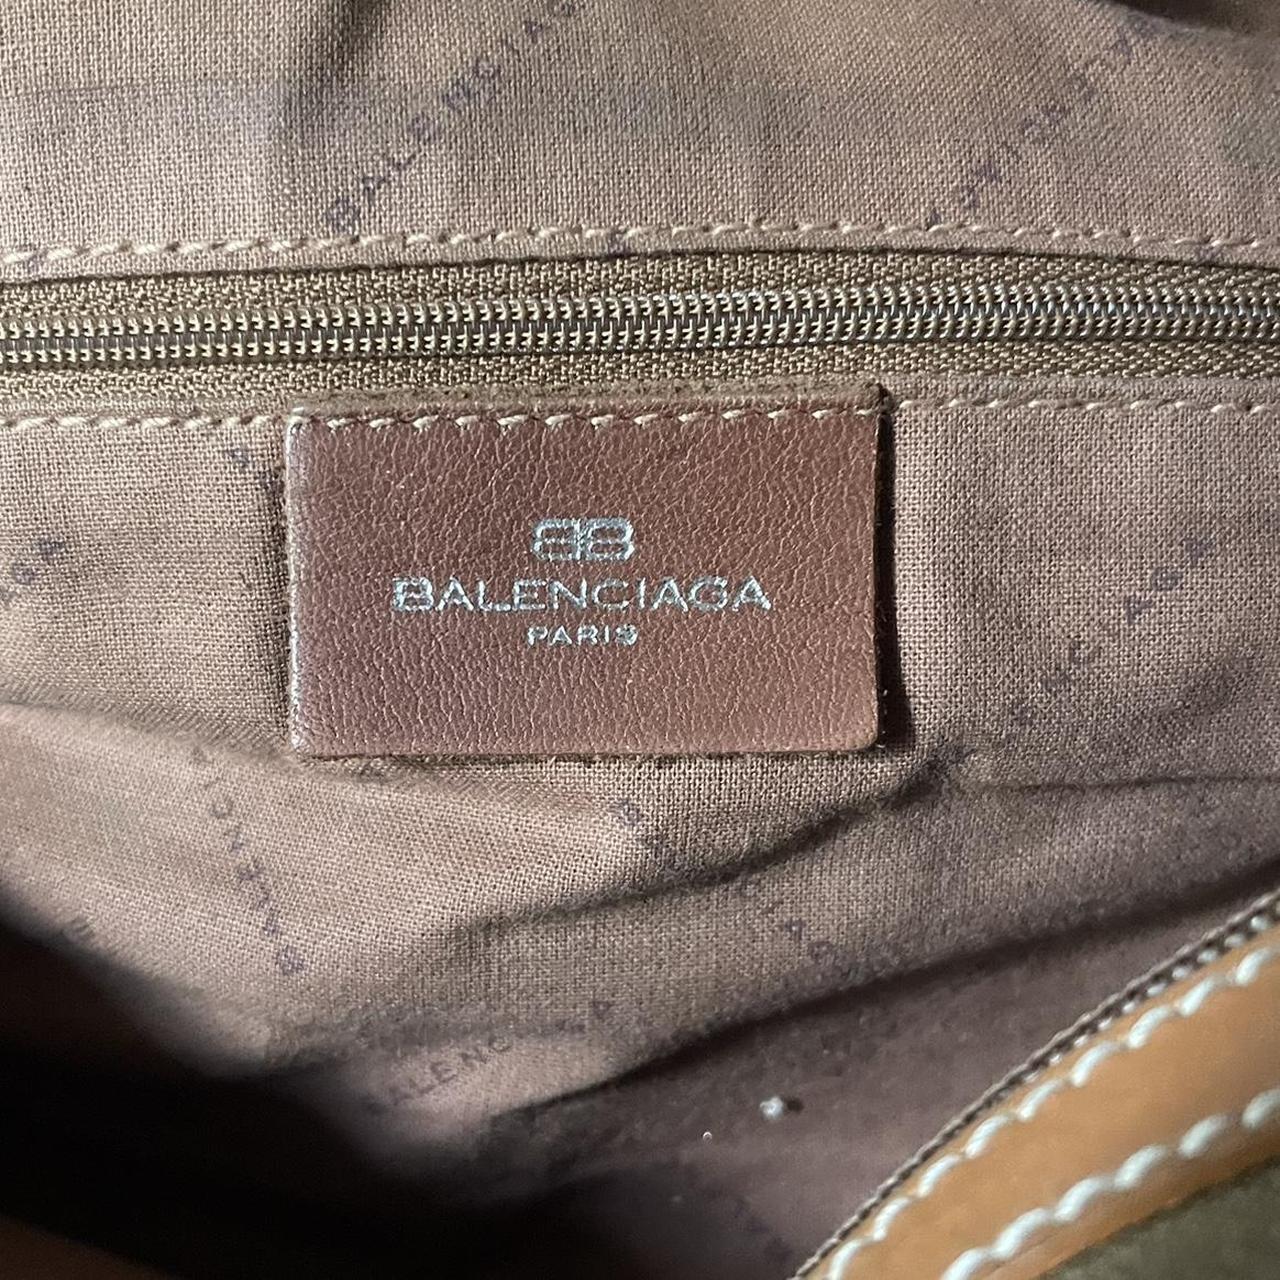 Authentic BALENCIAGA vintage bag. Color is brown - Depop